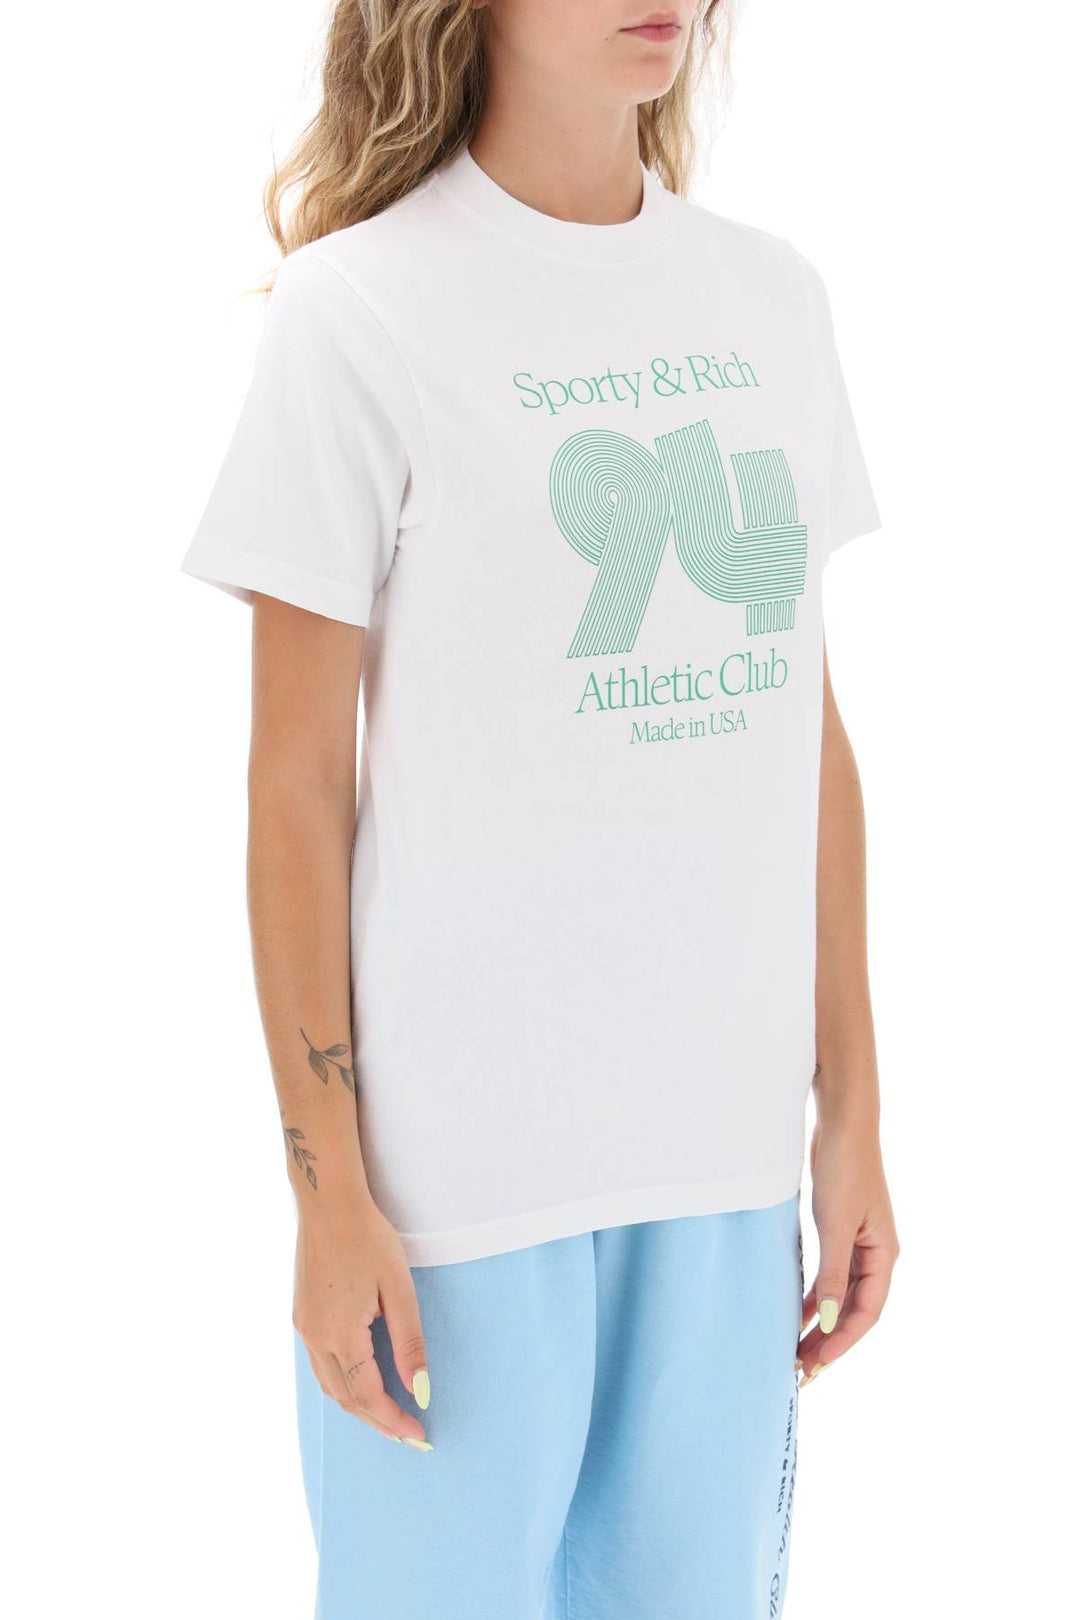 T Shirt '94 Athletic Club' - Sporty Rich - Donna